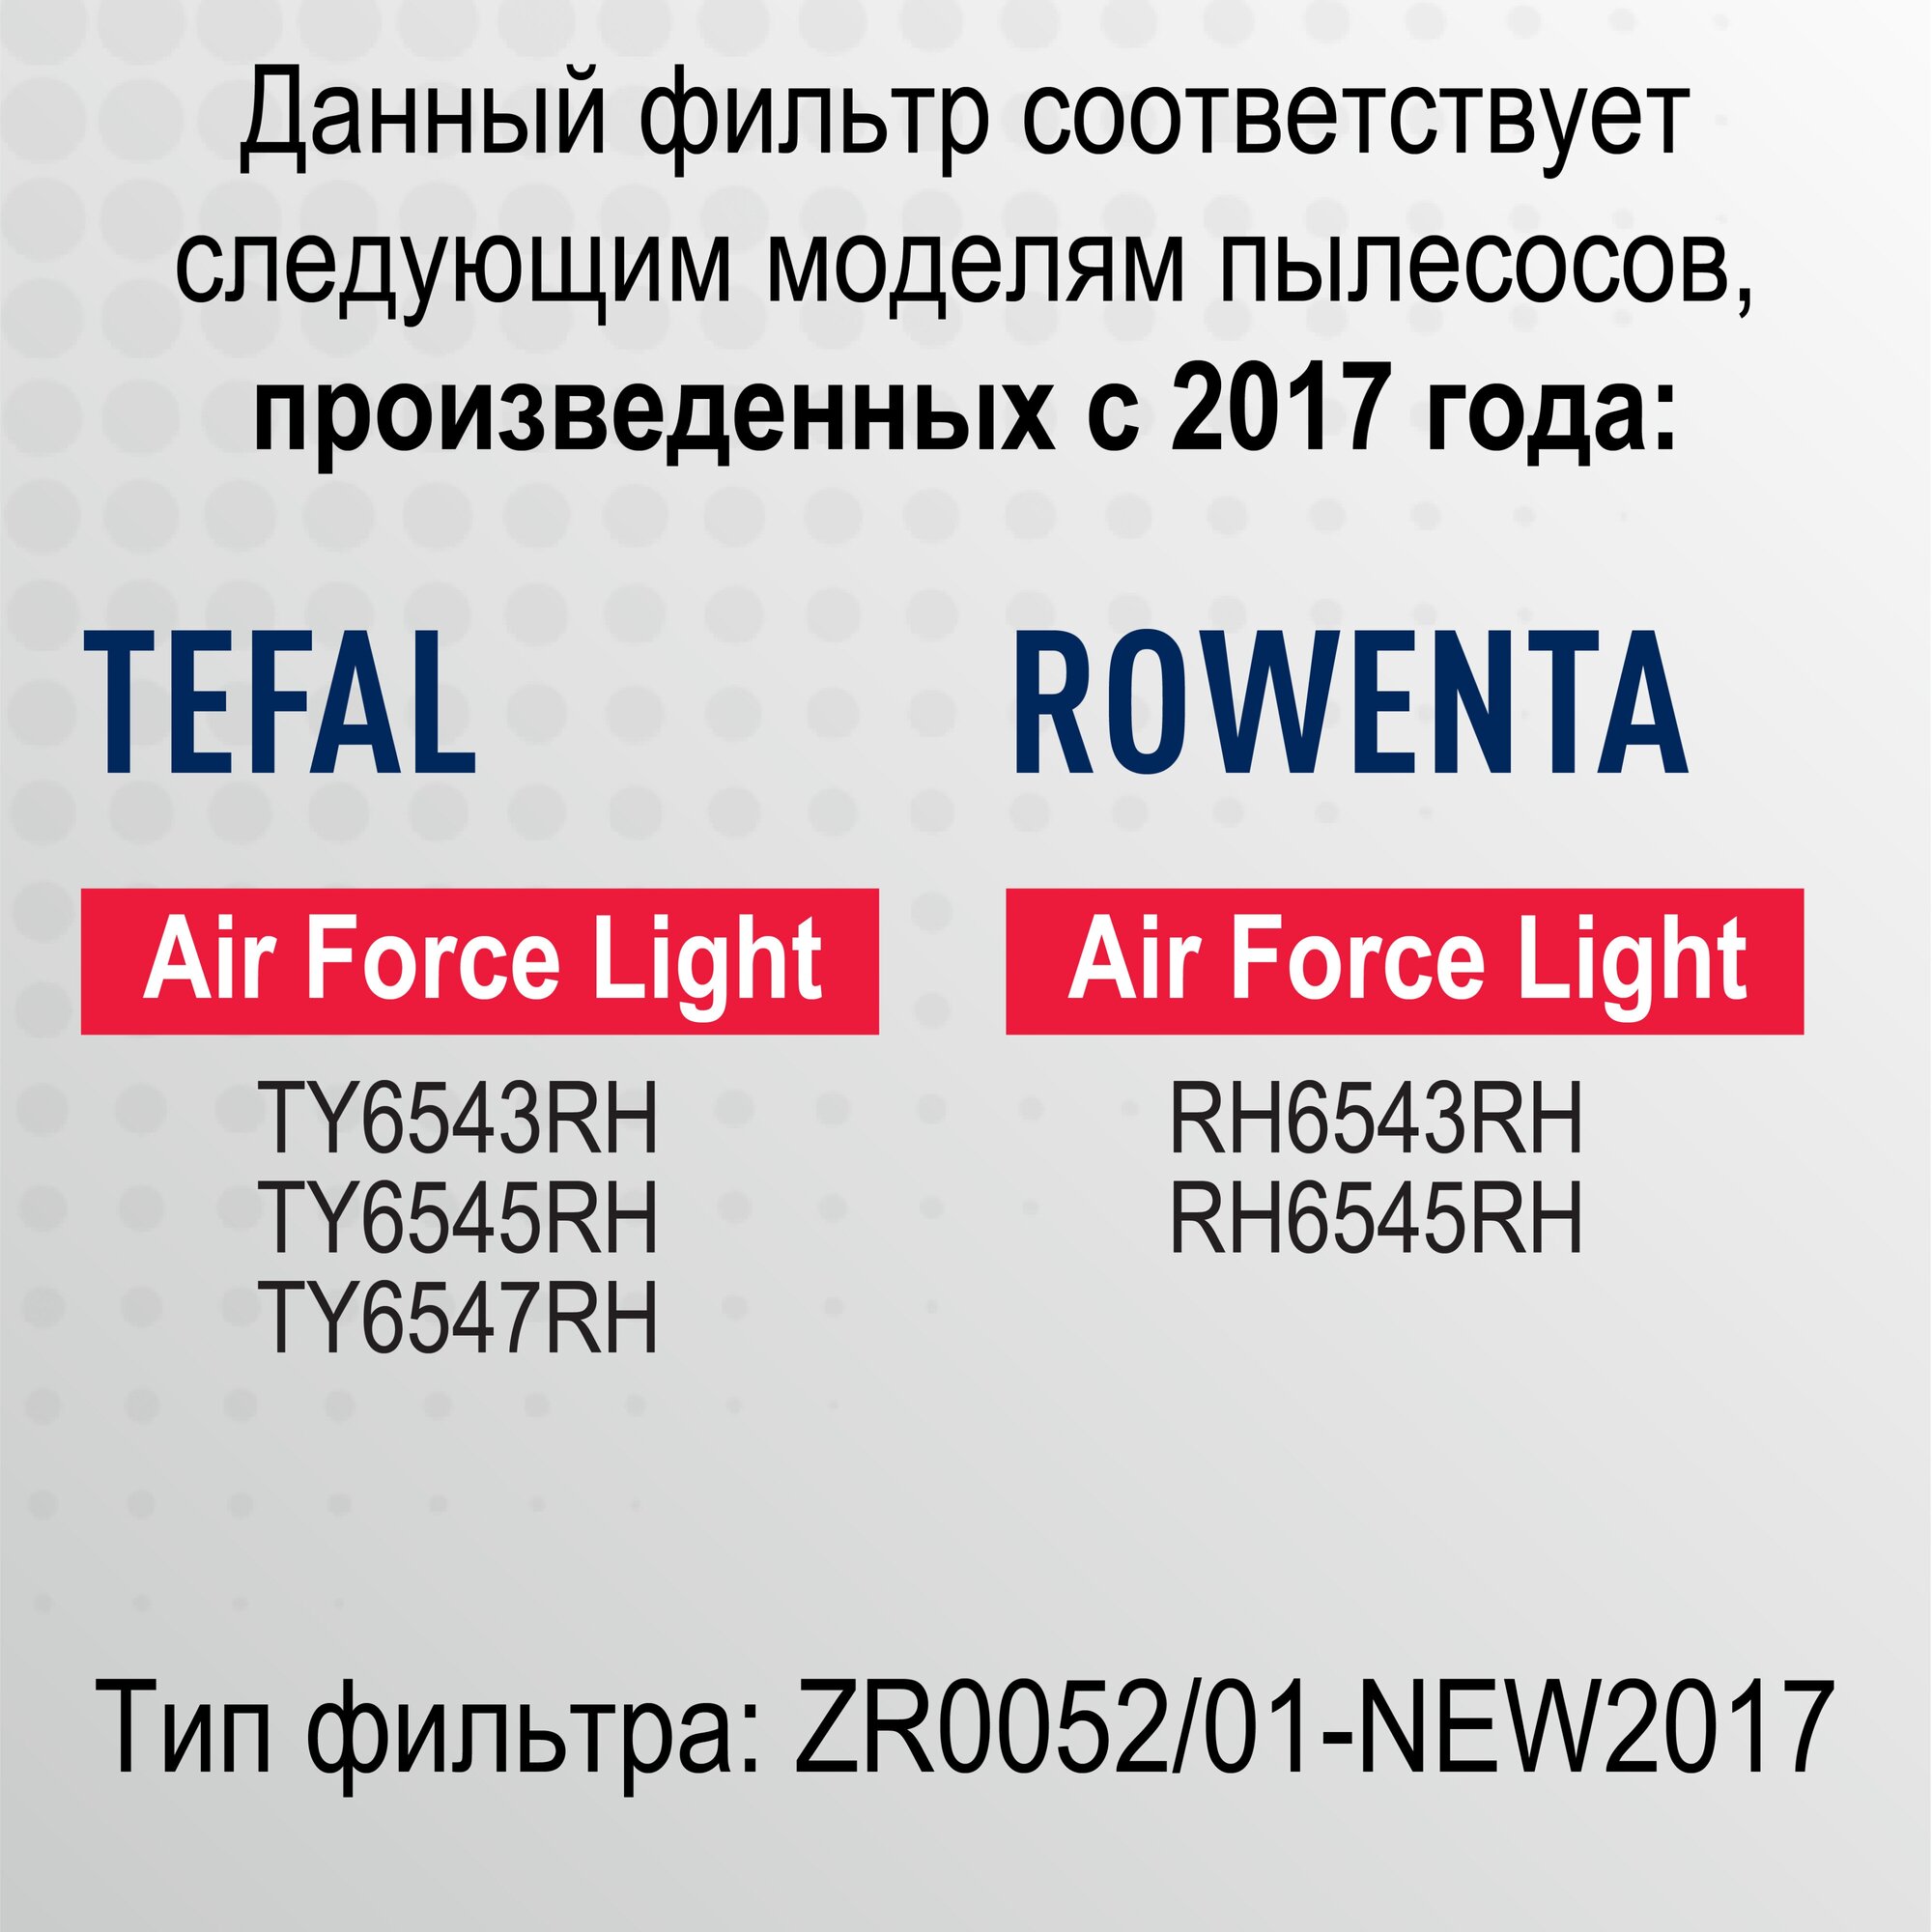 НЕРА-фильтр TOPPERR , для пылесосов Tefal, Rowenta, Данный фильтр подходит для следующих моделей пылесосов: TefalAir Force Light произведенных после 2019 года TY6543RH, TY6545RH, TY6547RH. Rowenta Air - фото №3